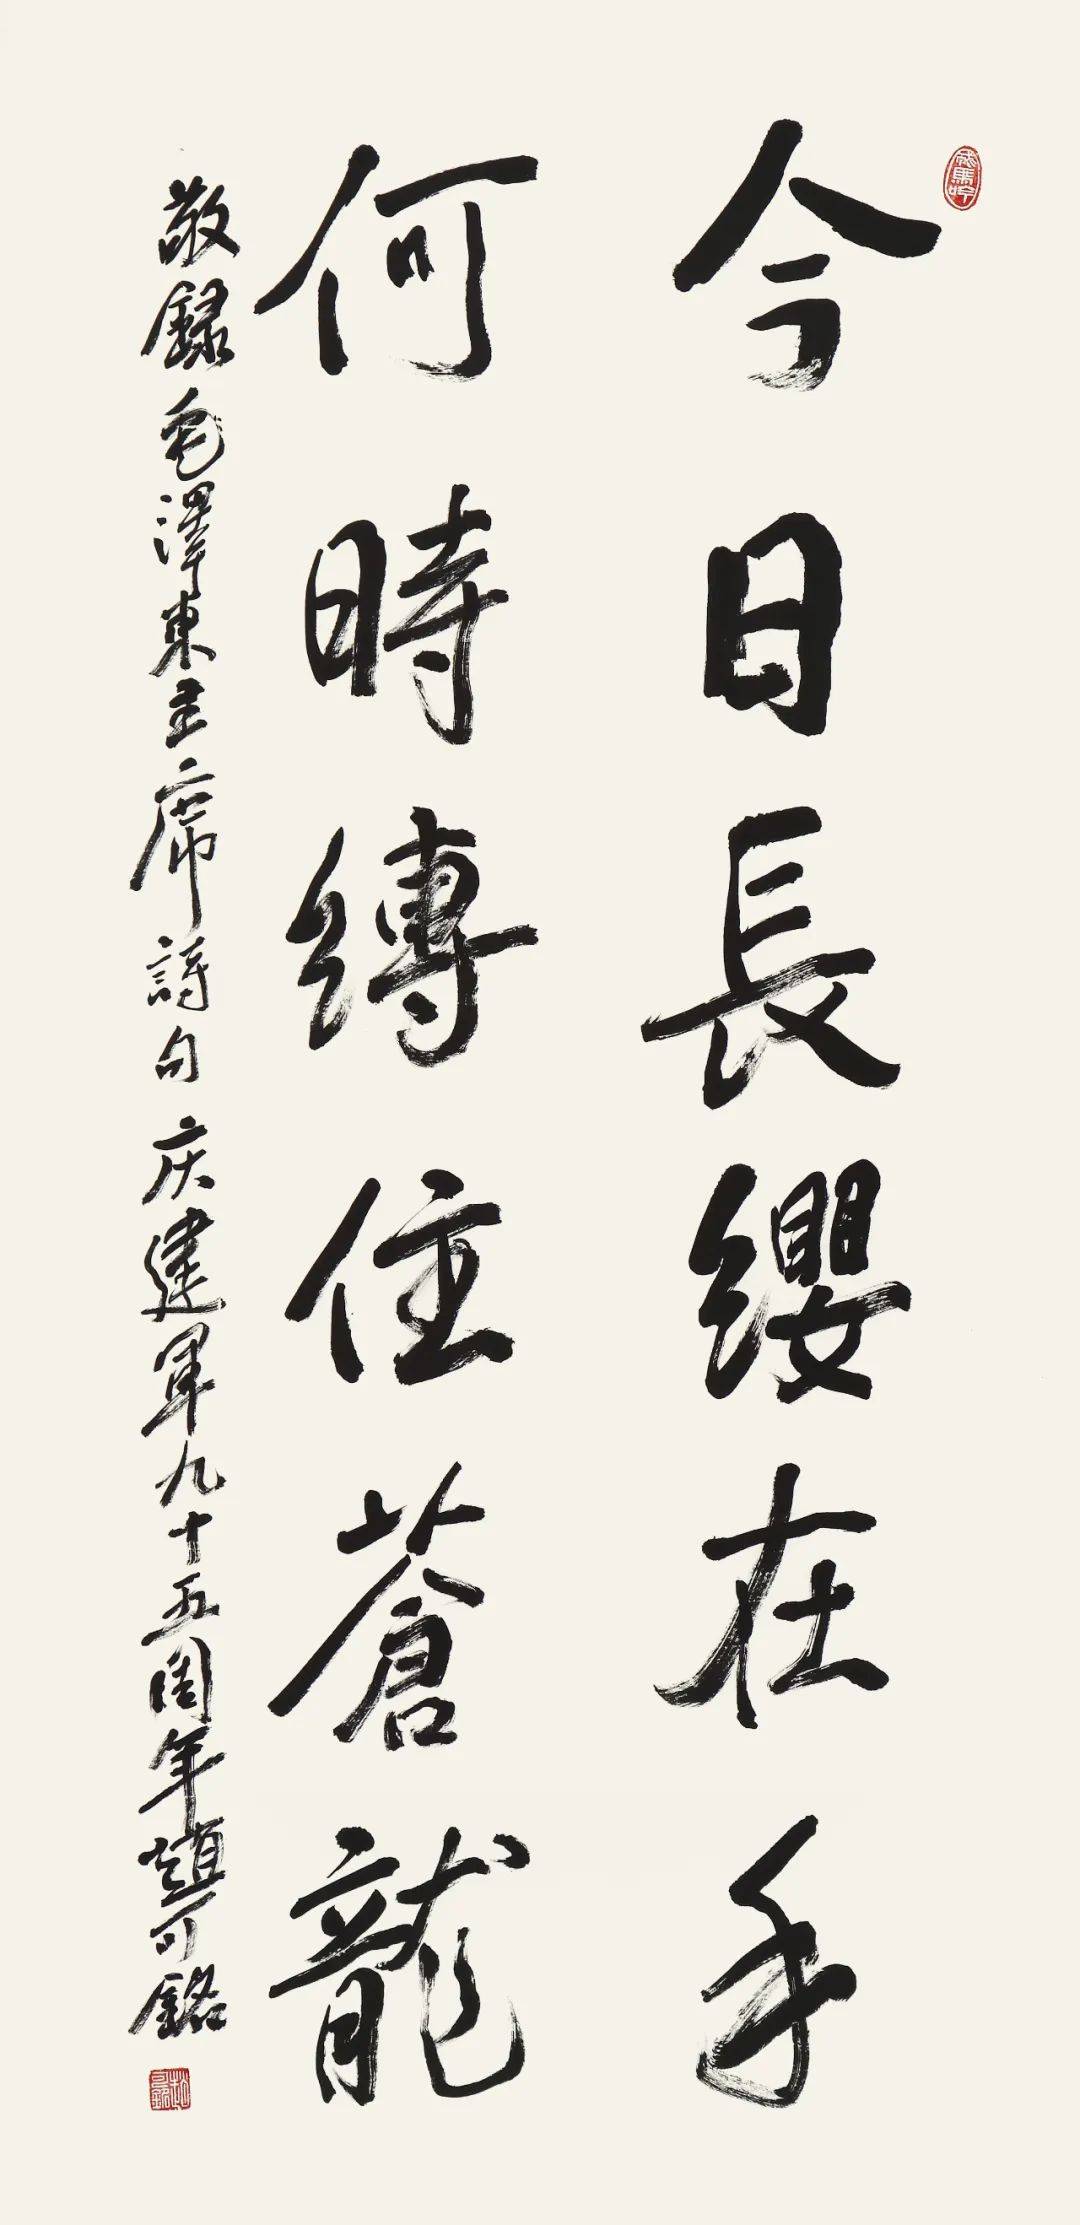 百岁时代启动会暨“我是一个兵”第七回书法展在广州圆满举行